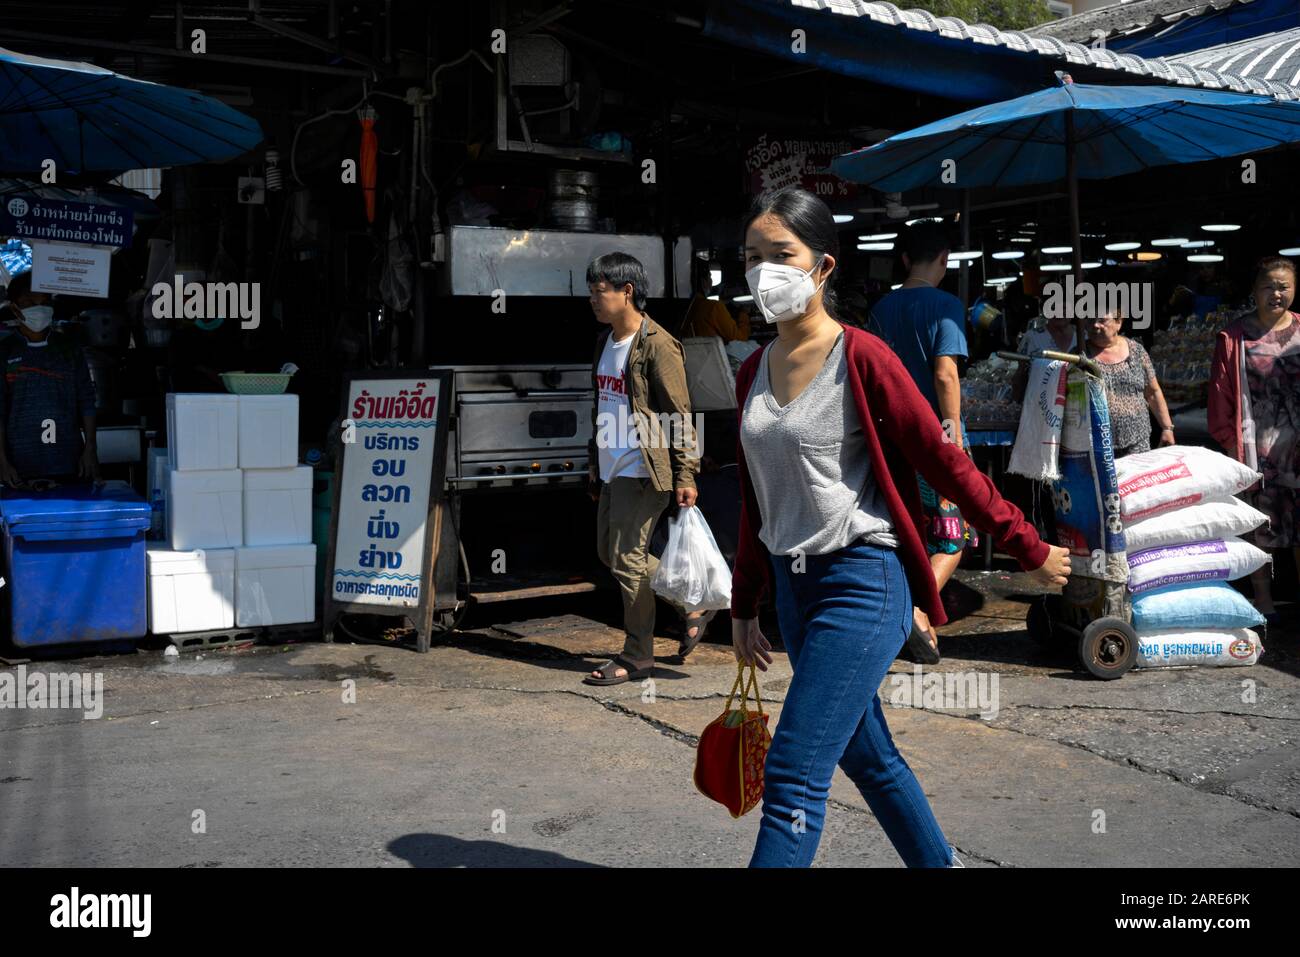 Mujer facemask; Usando una máscara de cara contra la contaminación en un mercado asiático de la calle. Tailandia S. E. Asia Foto de stock